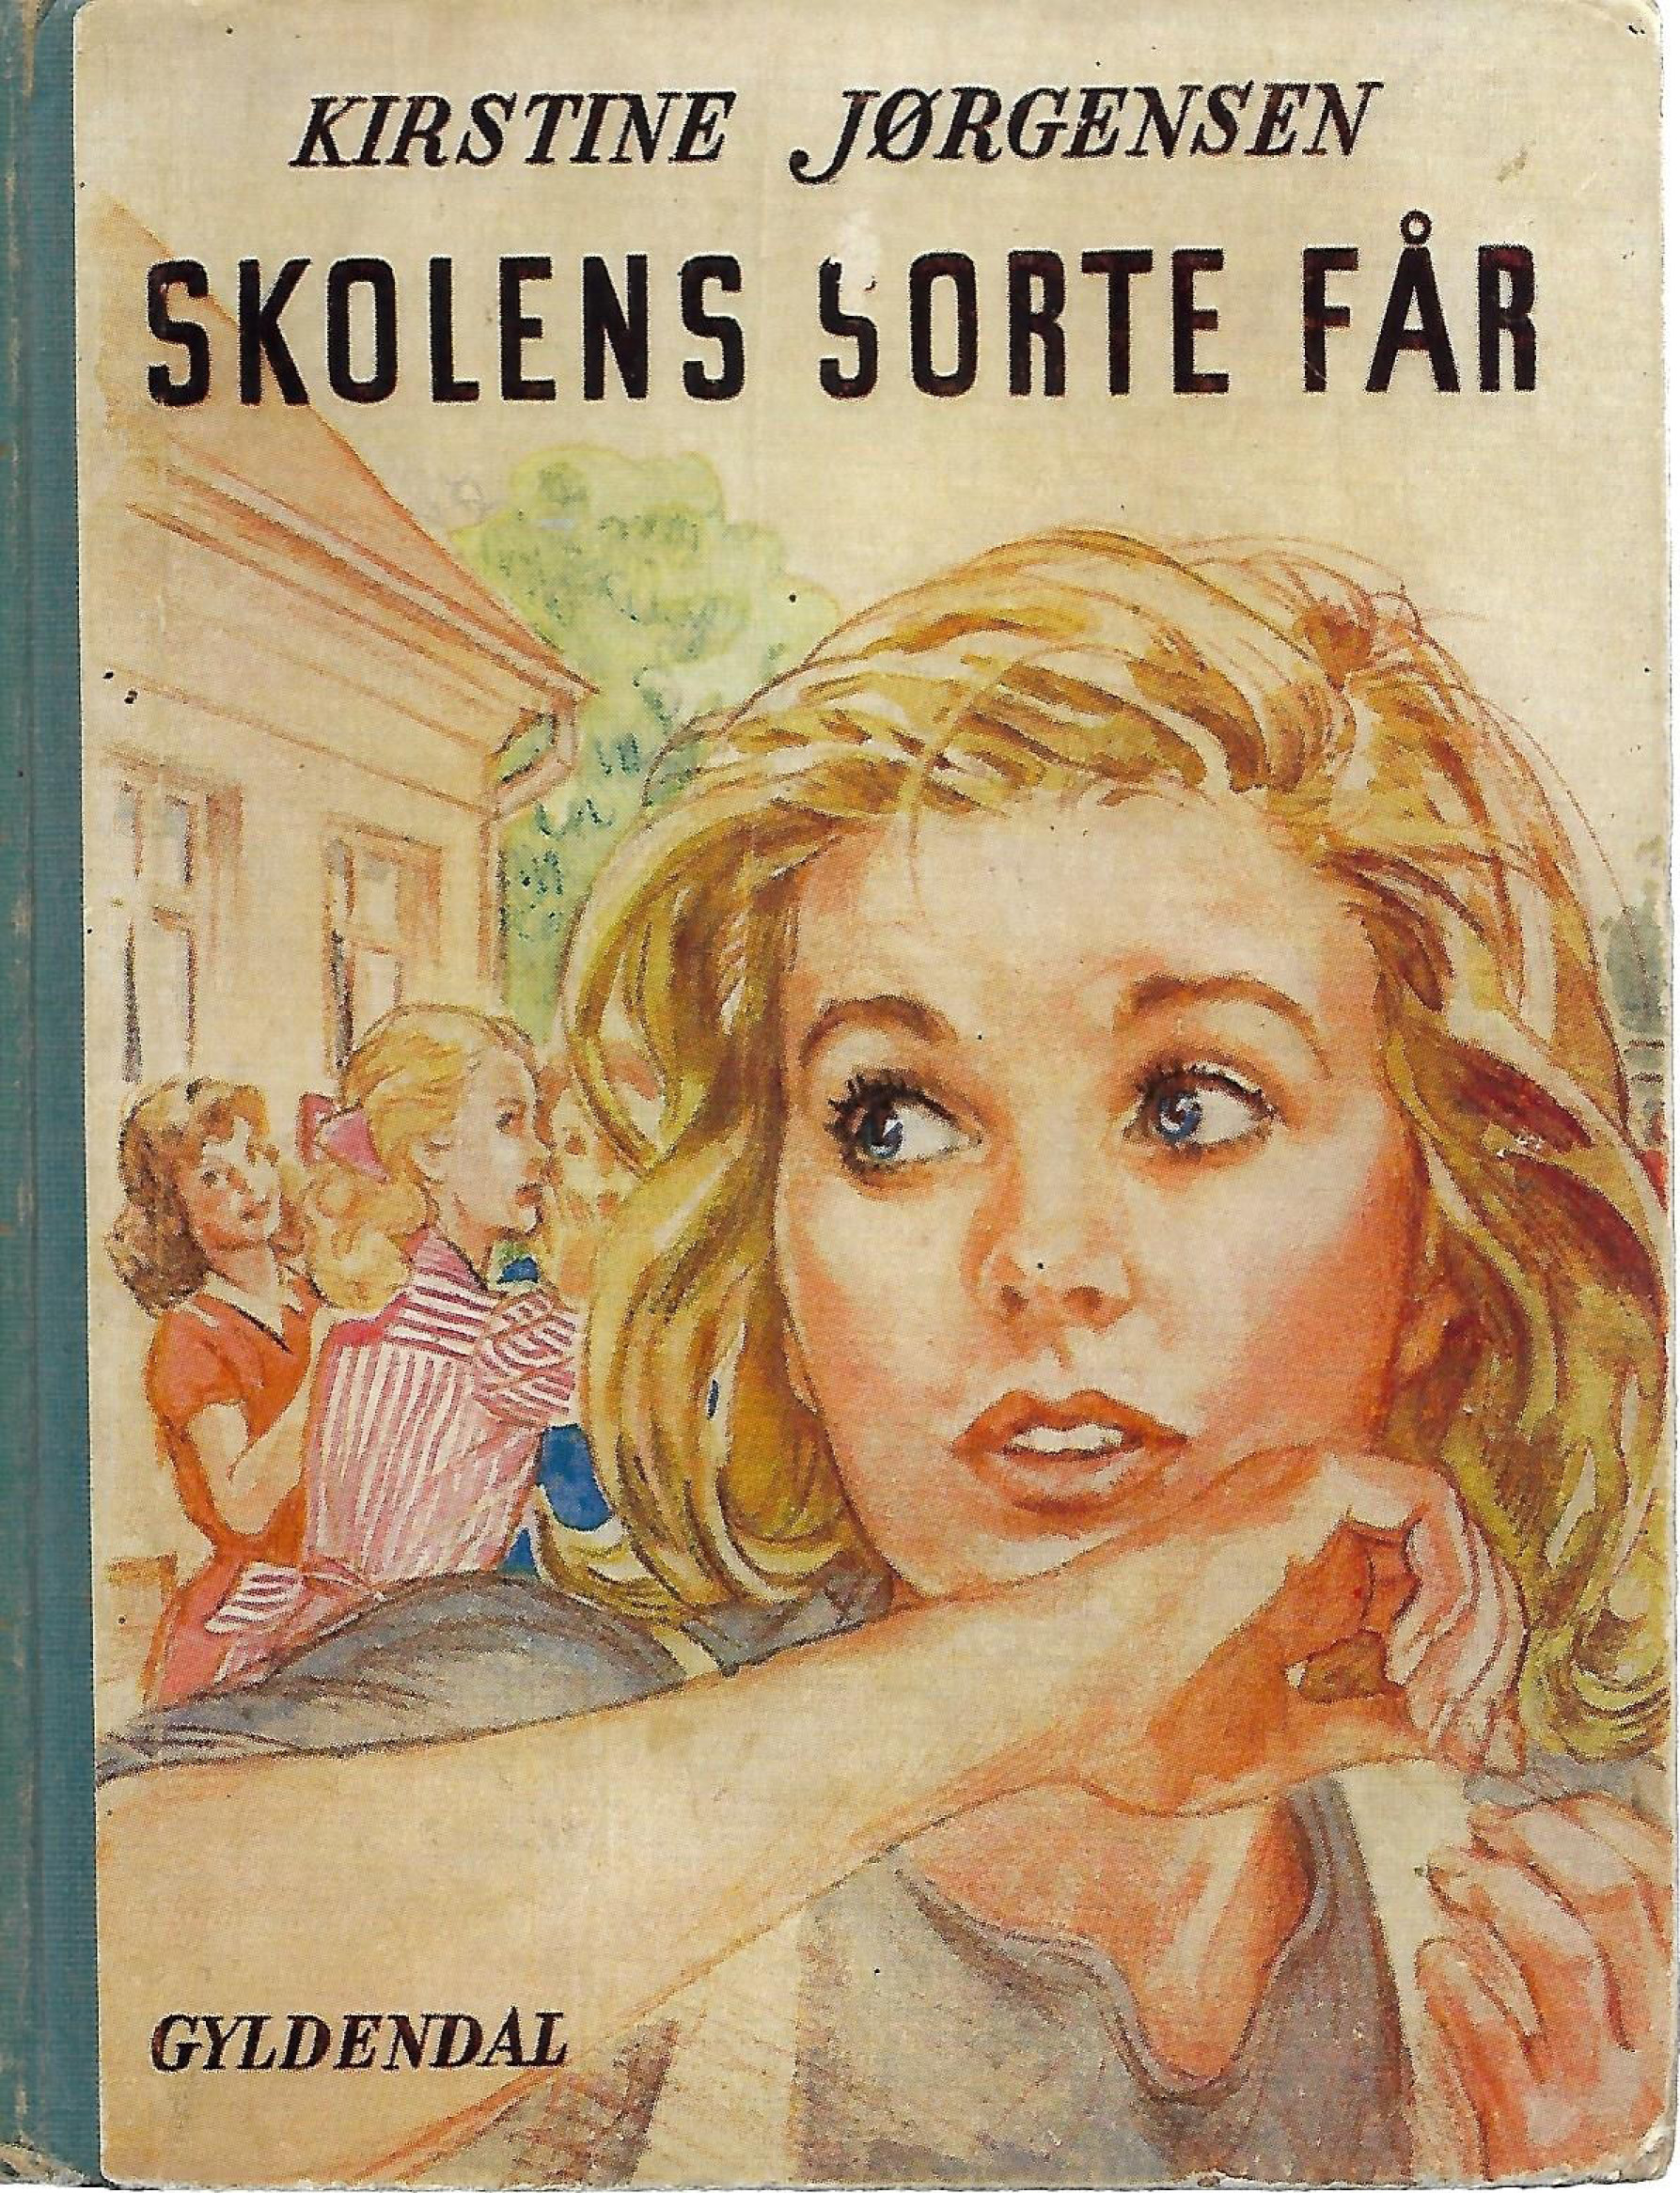 Skolens sorte får - Kirstine Jørgensen 1950-1